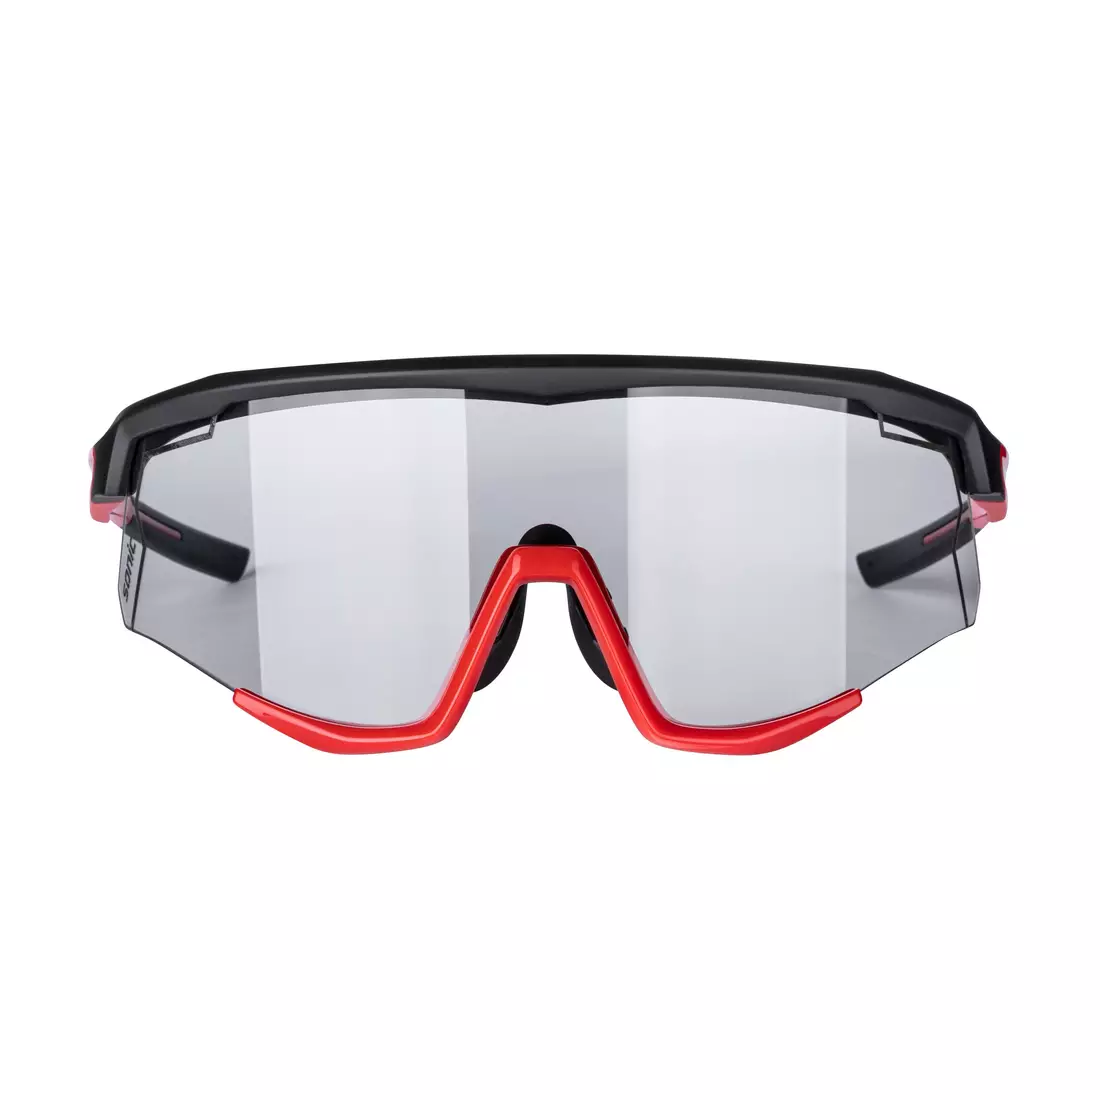 FORCE okuliare na cyklistiku / šport SONIC, Fotochromické, čierne a červené, 910957